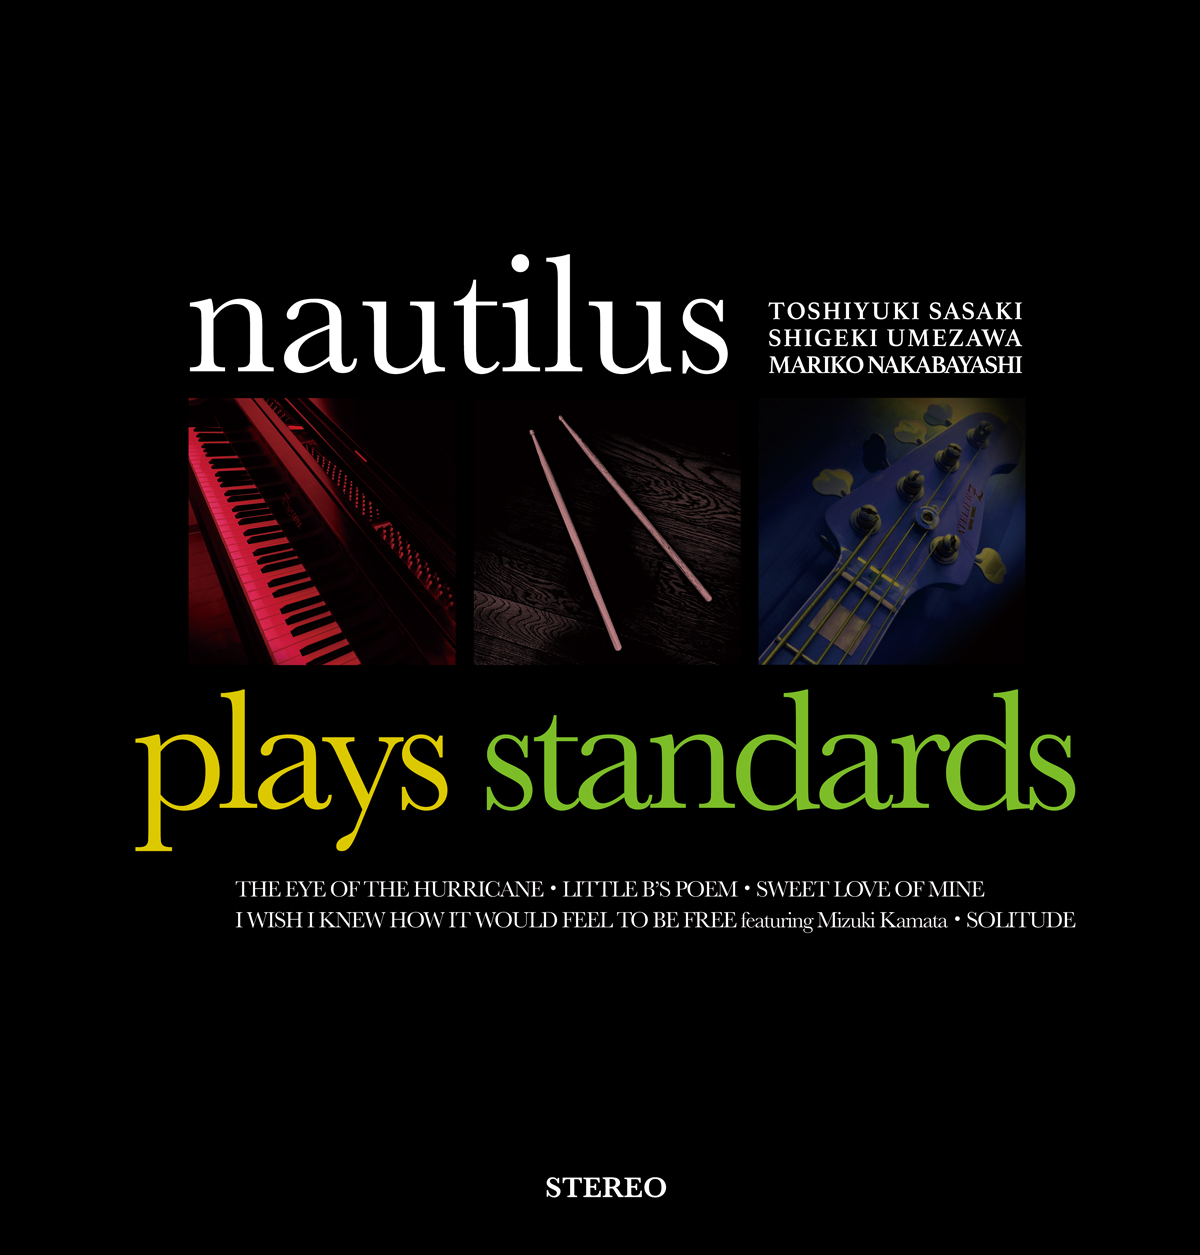 NAUTILUSの2022年初タイトルは、ジャズ・スタンダードに焦点を当てたカヴァーEP!!